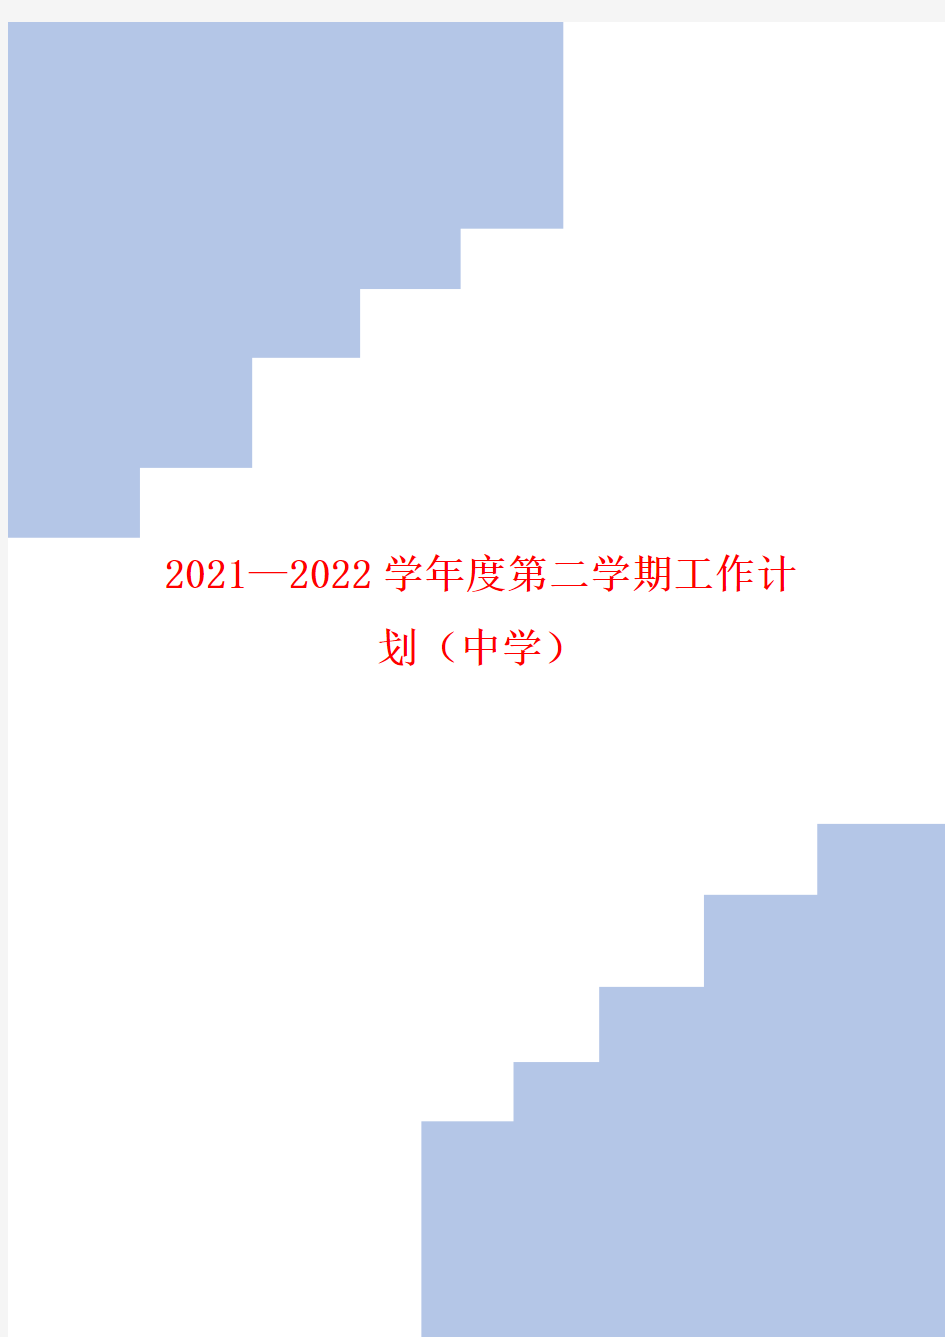 2021—2022学年度第二学期工作计划(中学)